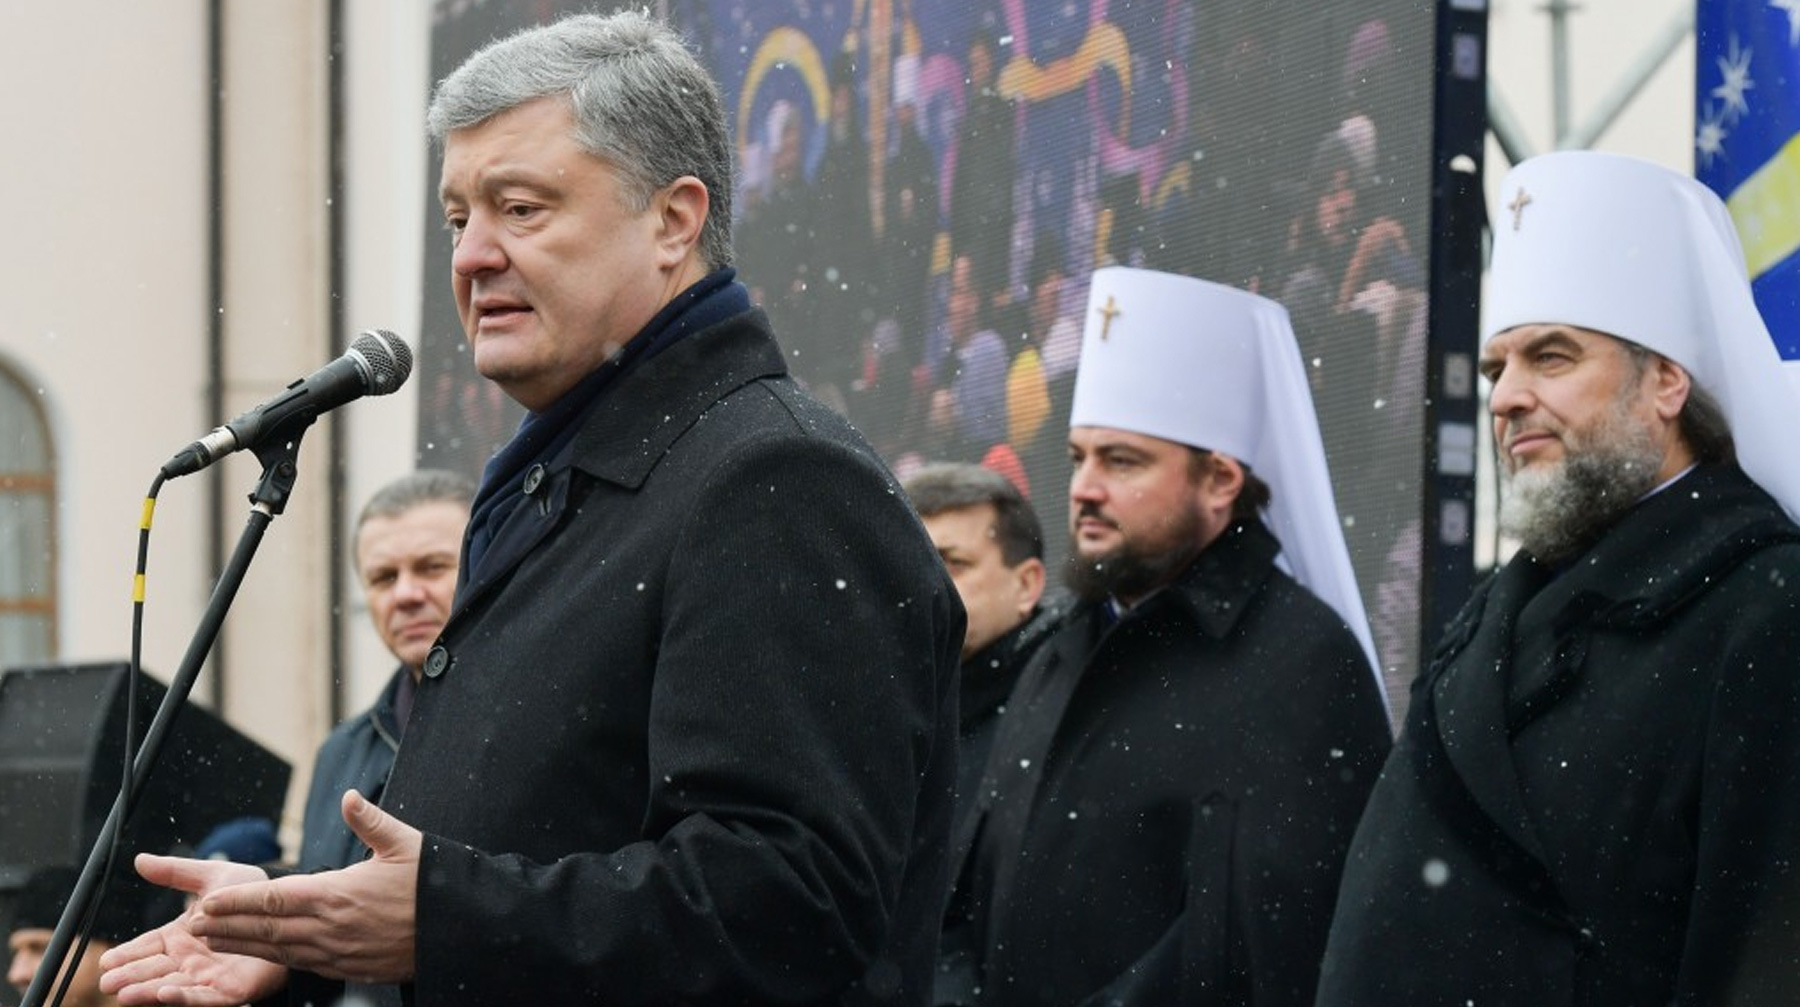 Русской православной церкви нужно доказать свою каноничность, прежде чем называть ПЦУ раскольнической, заявил президент Украины undefined